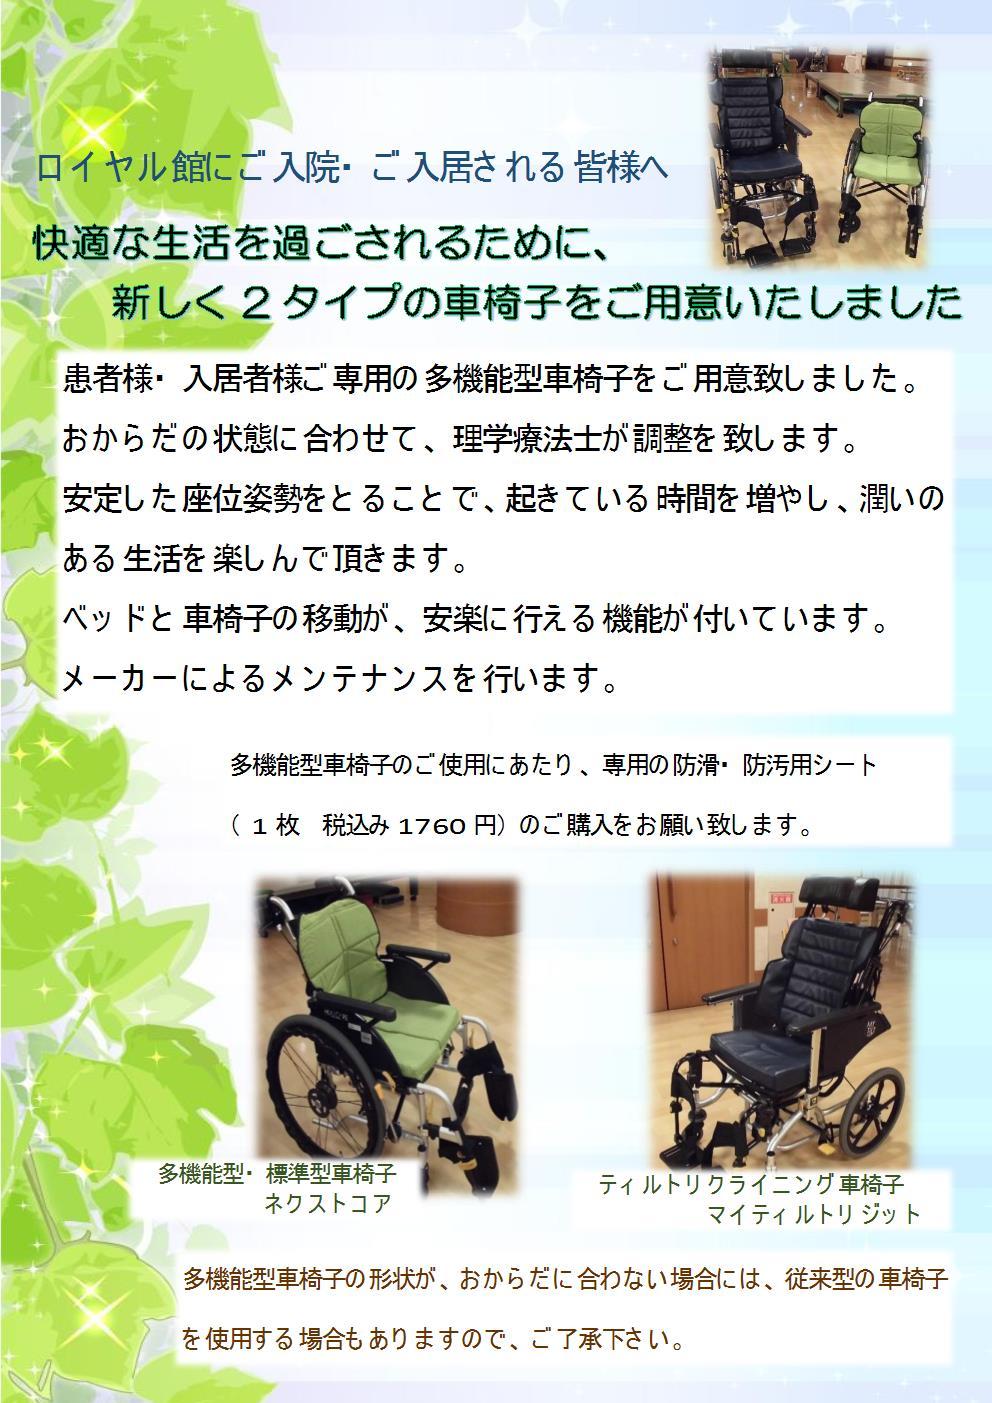 レンタル車椅子チラシ(2)JPEG.jpg